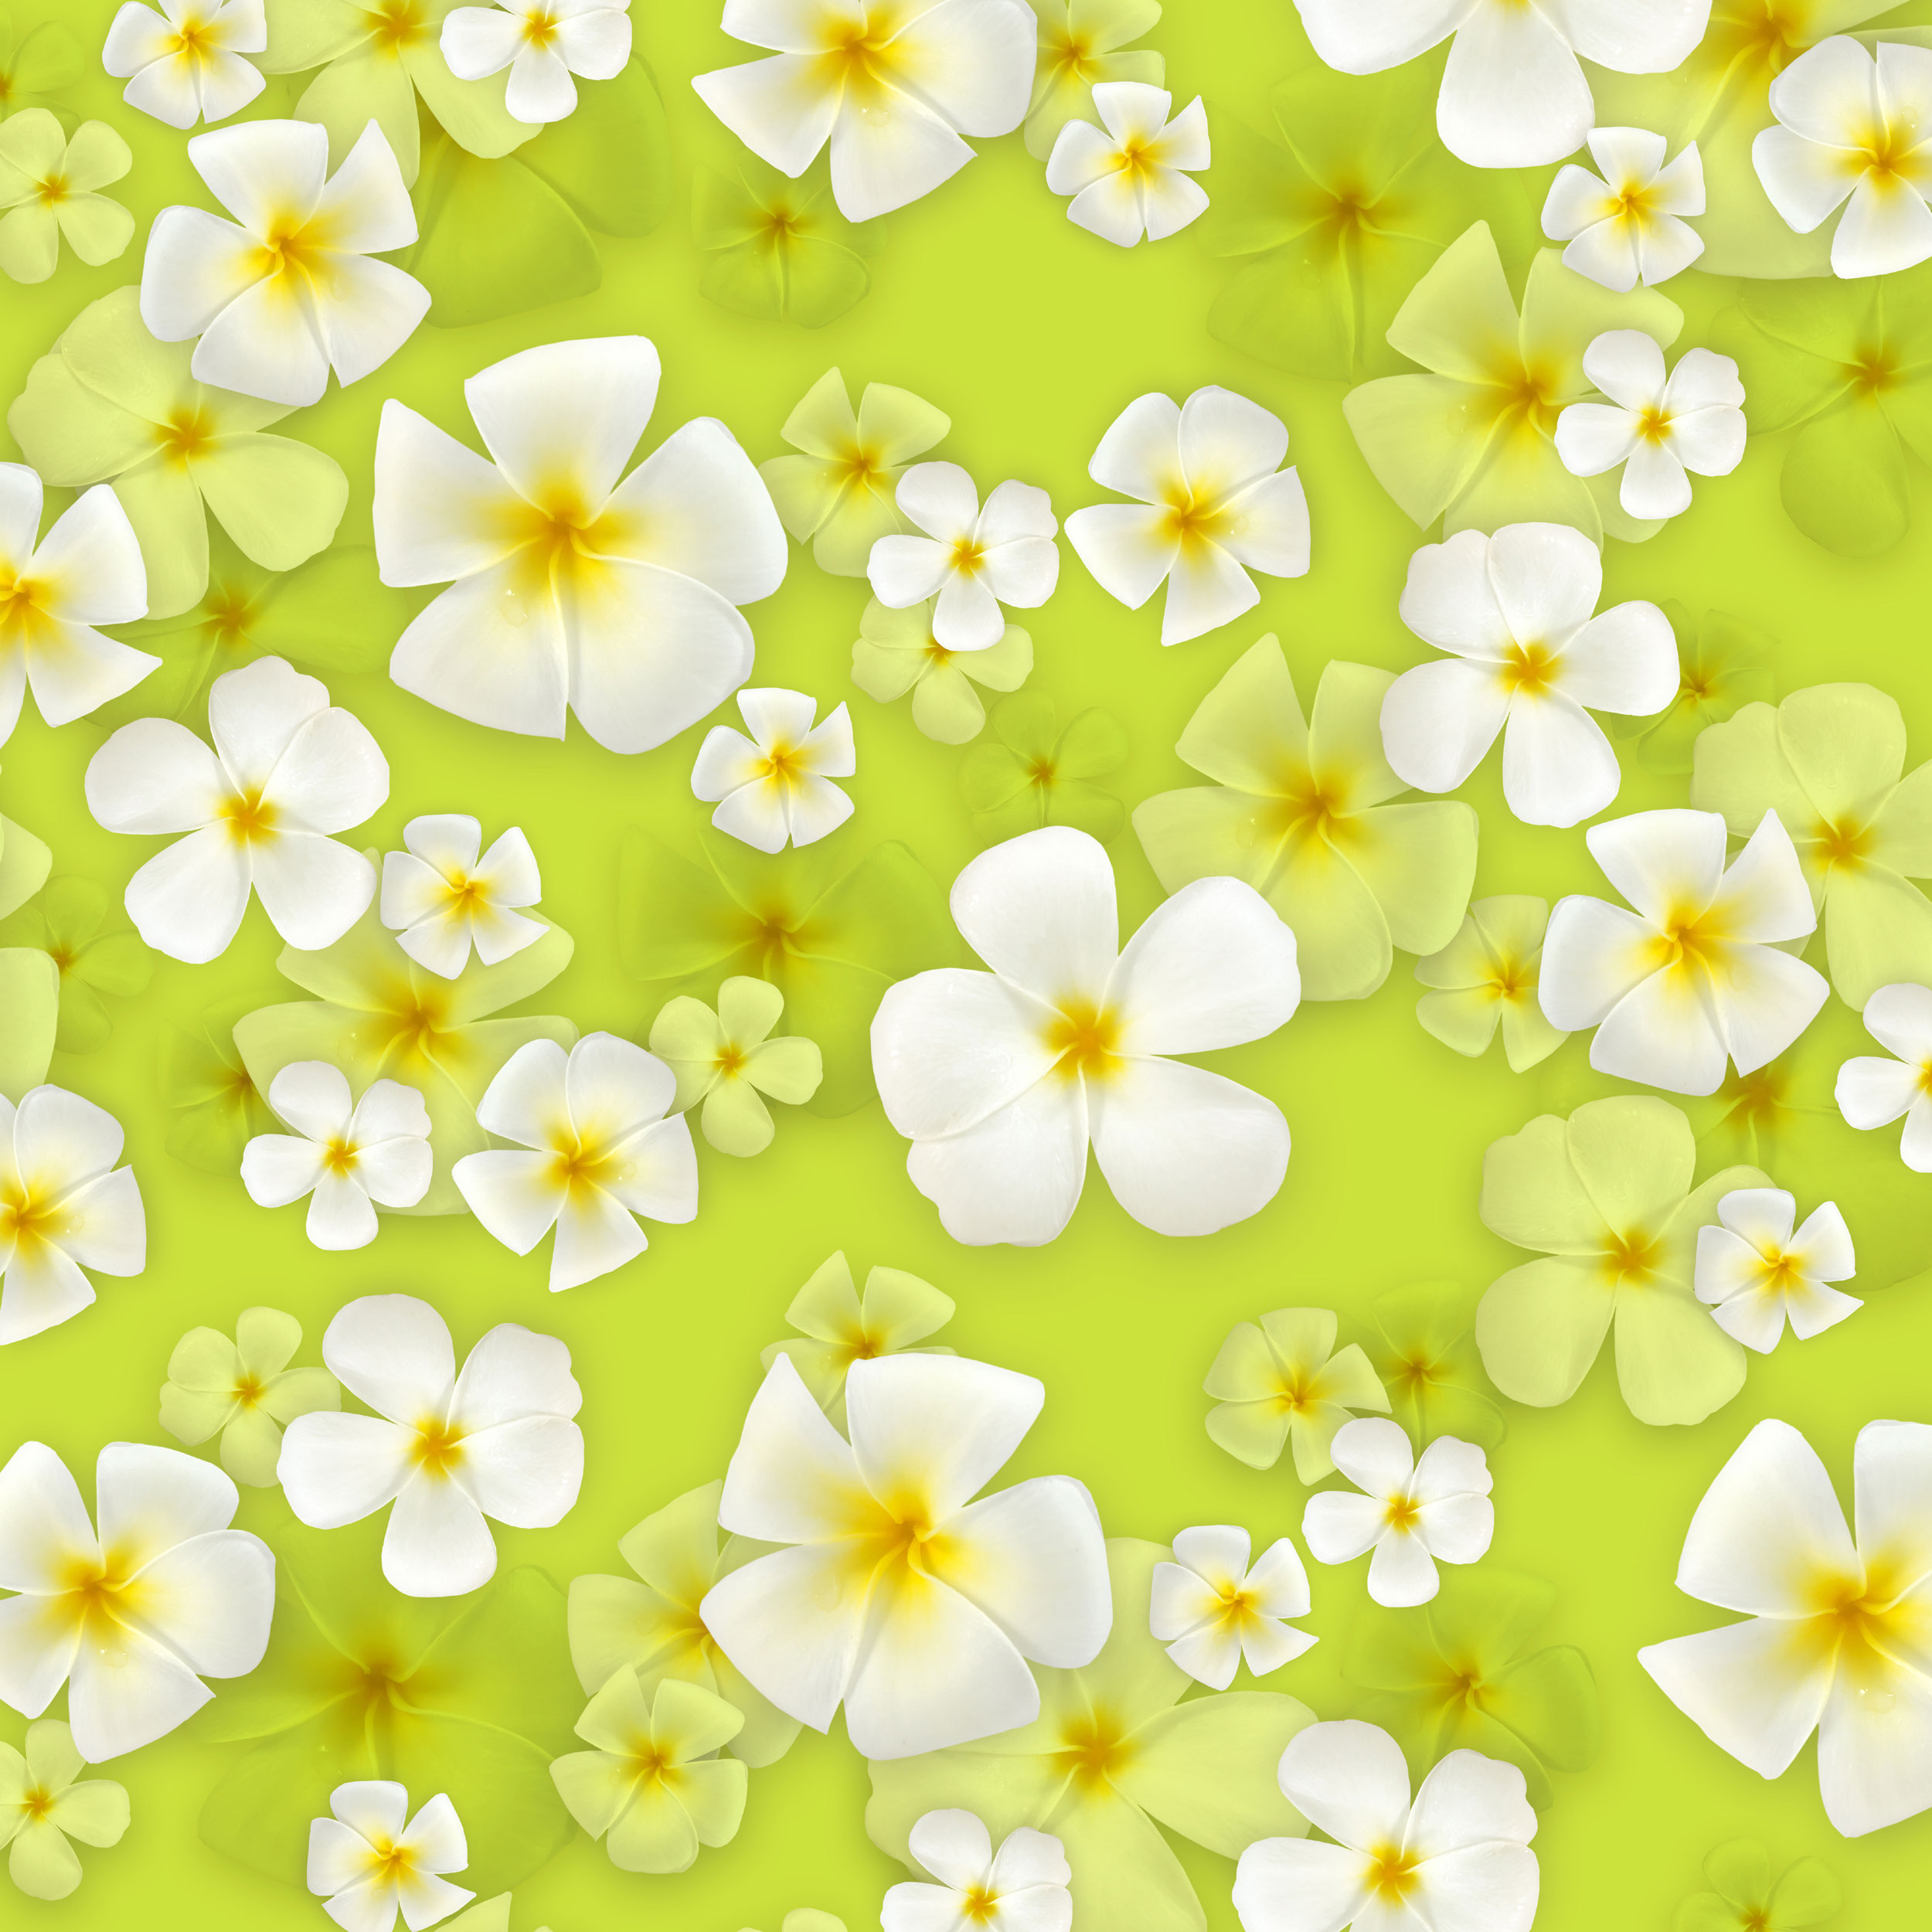 壁紙 背景イラスト 花の模様 柄 パターン No 301 白 黄緑背景